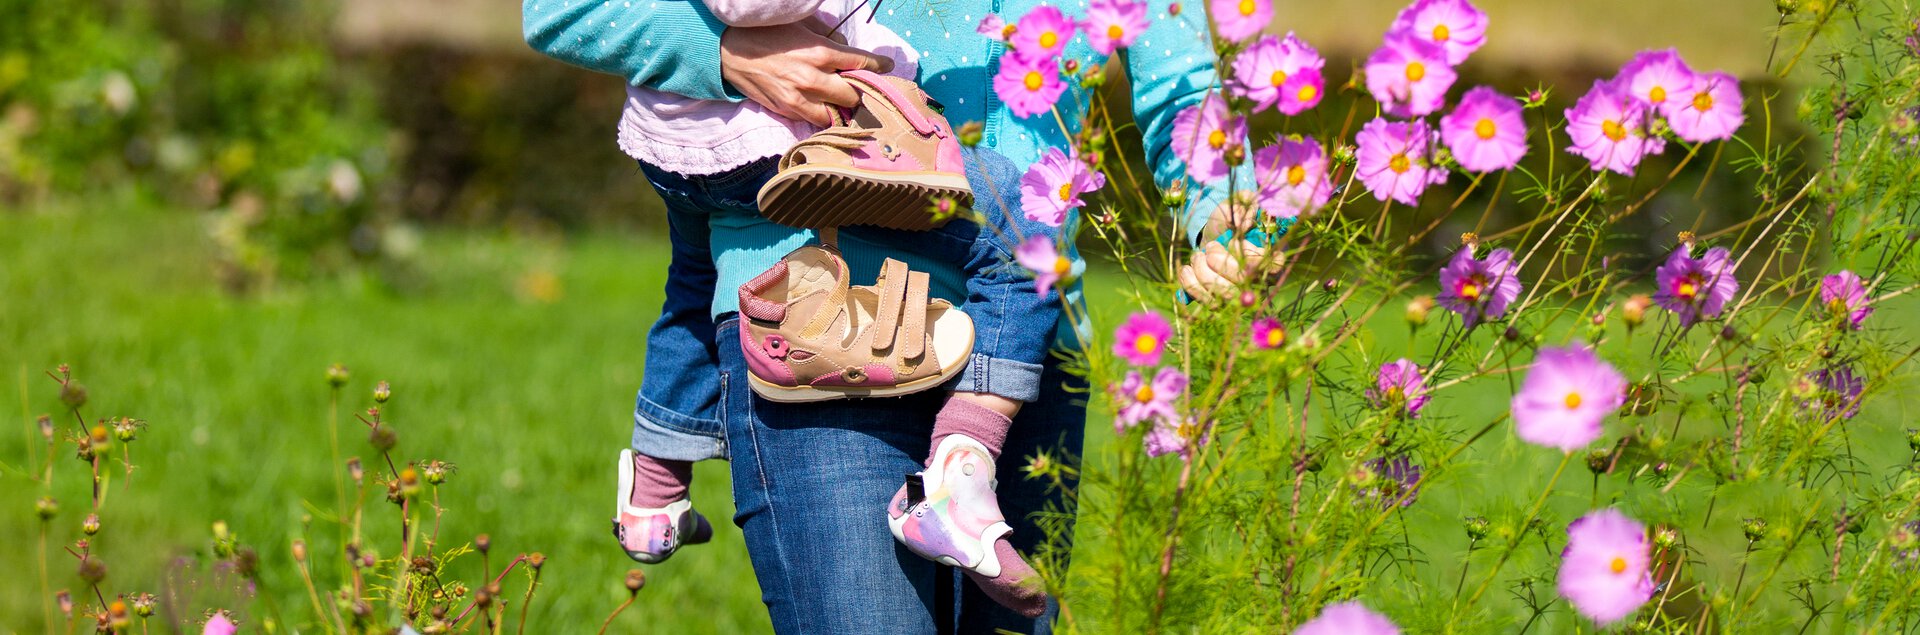 Sandalen als Orthesenschuhe für Kinder mit Orthesen | © Pohlig GmbH